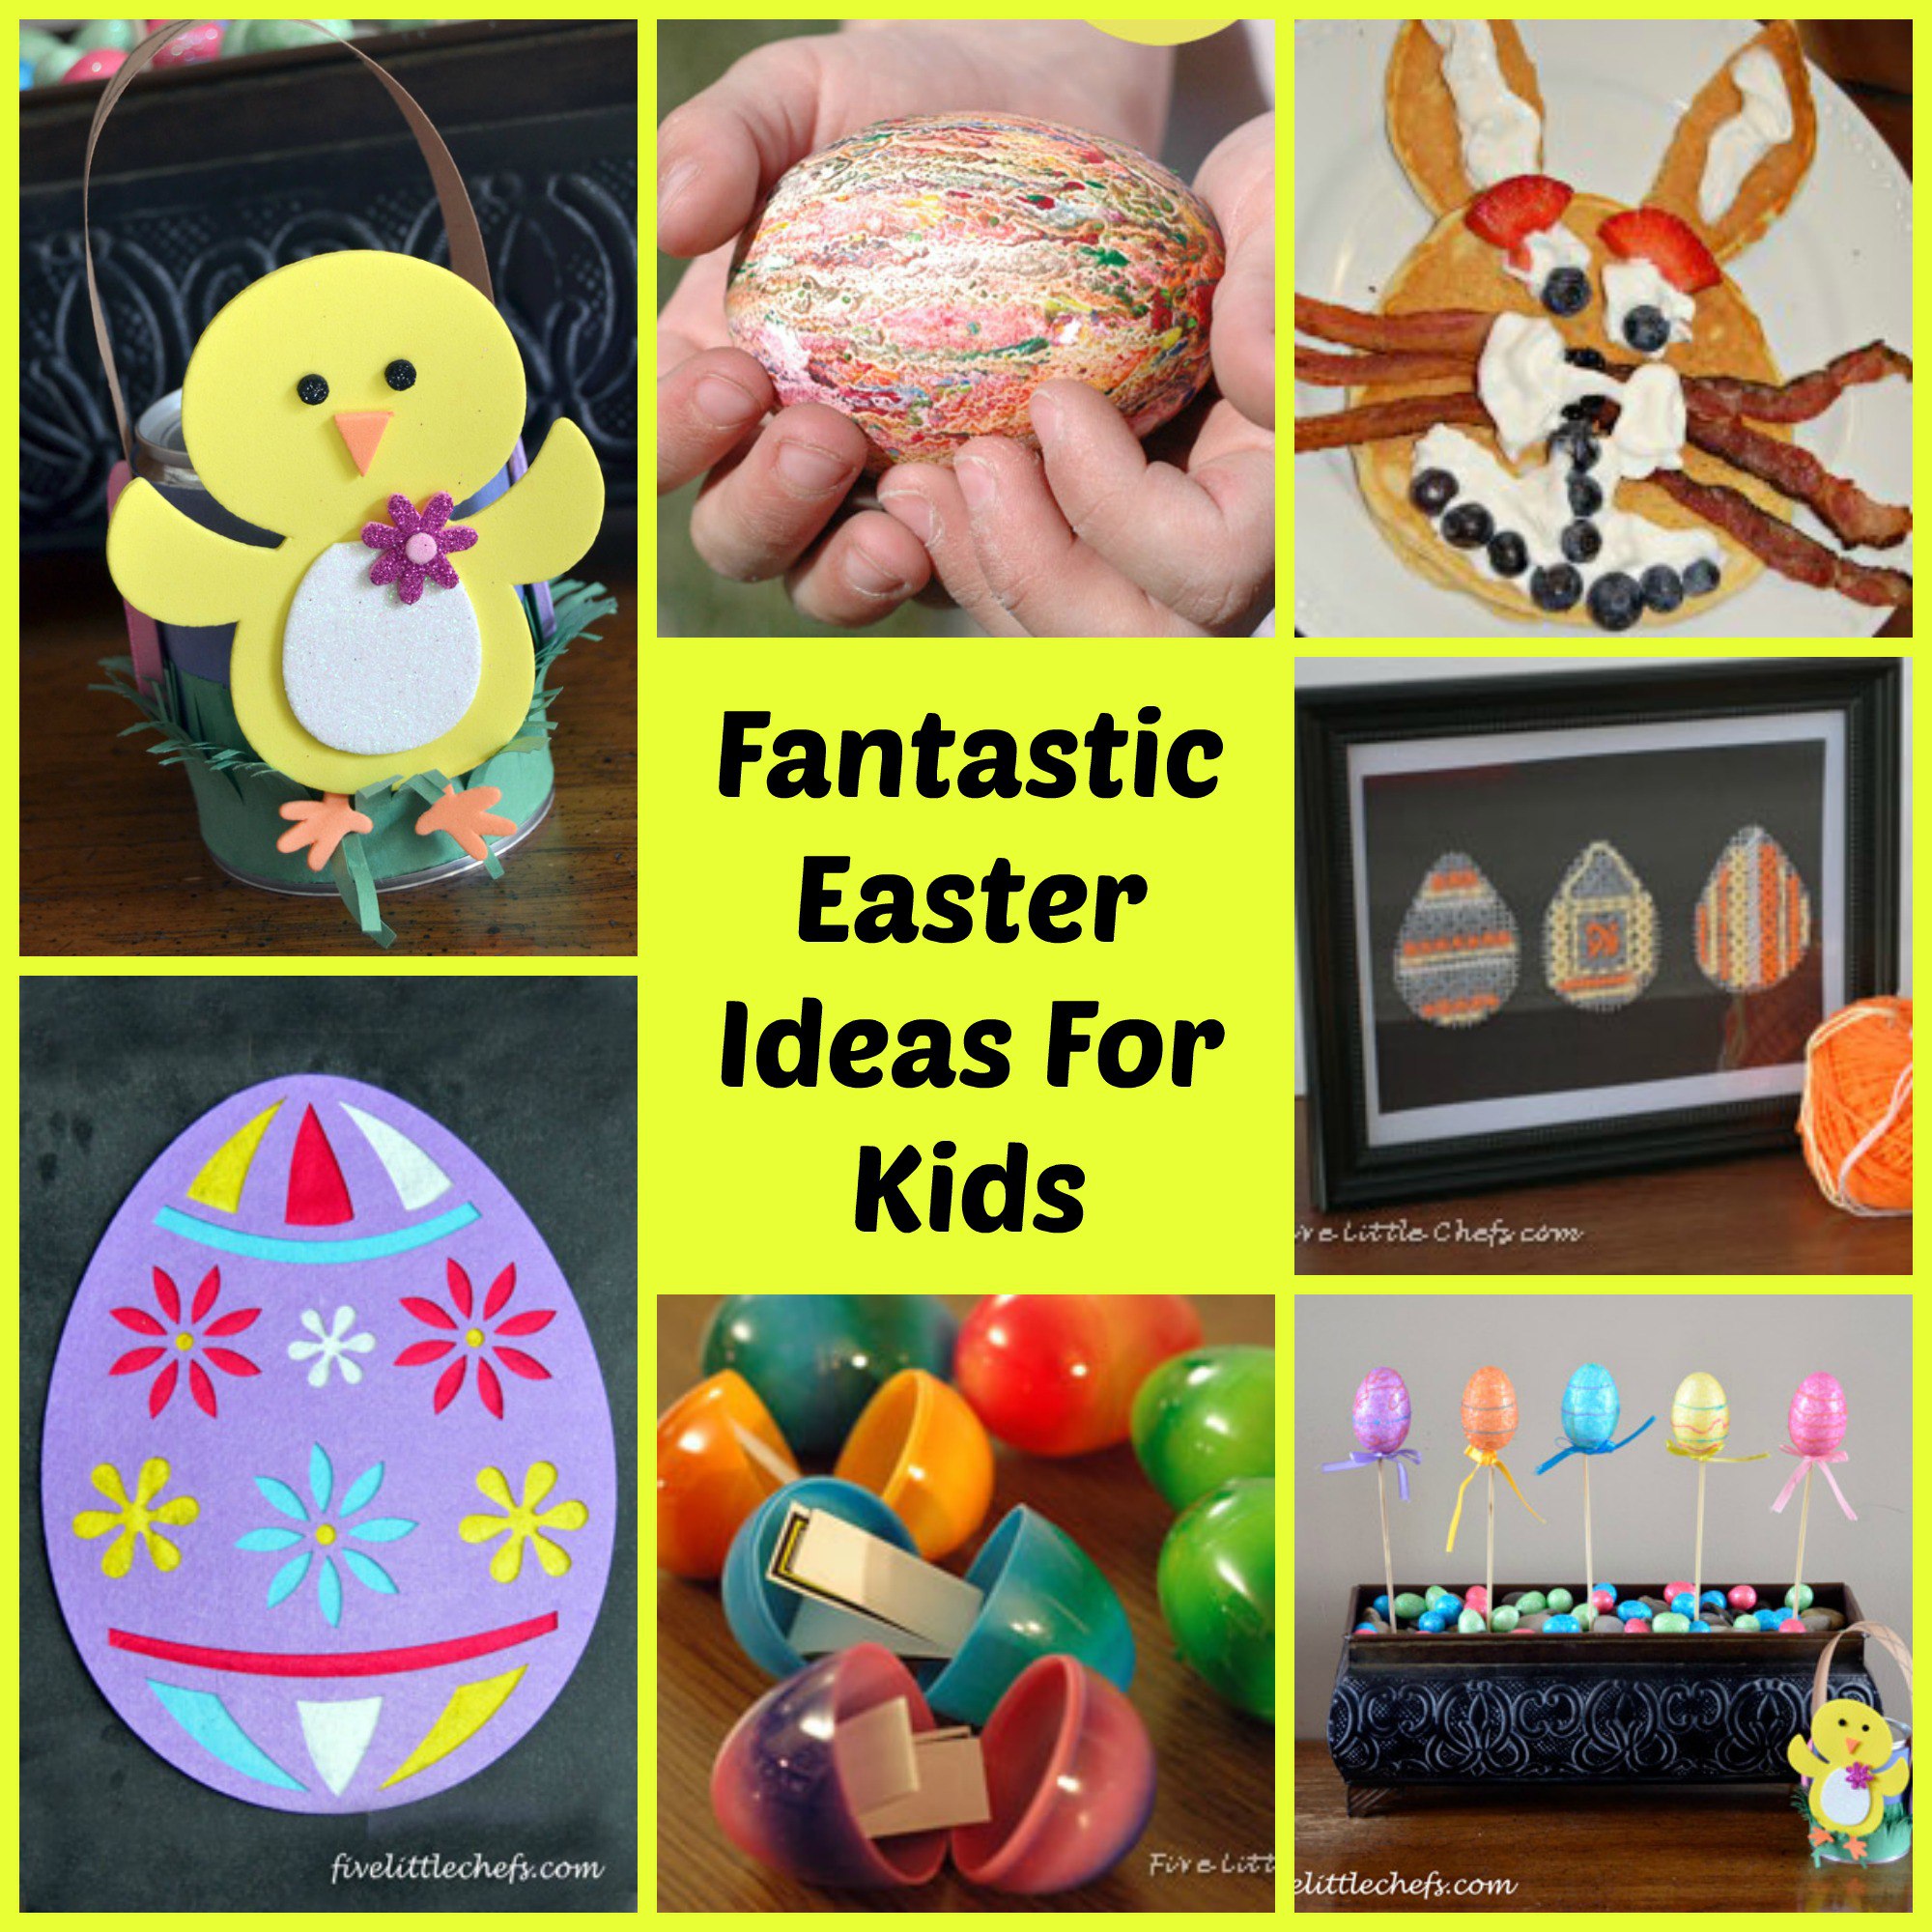 Easter ideas for kids from fivelittlechefs.com